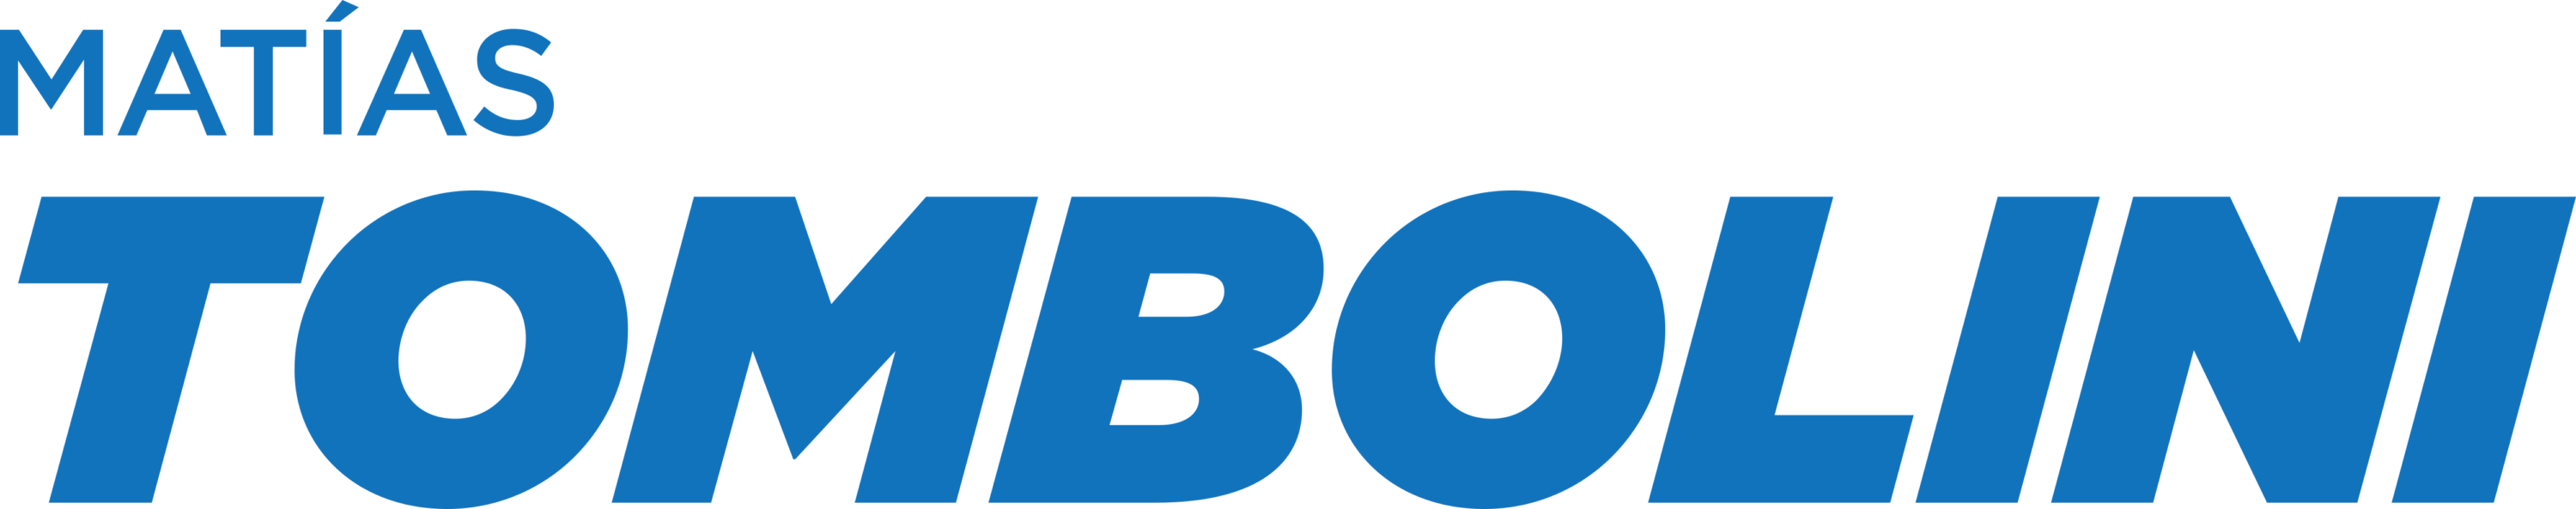 Matias Tombolini Logo